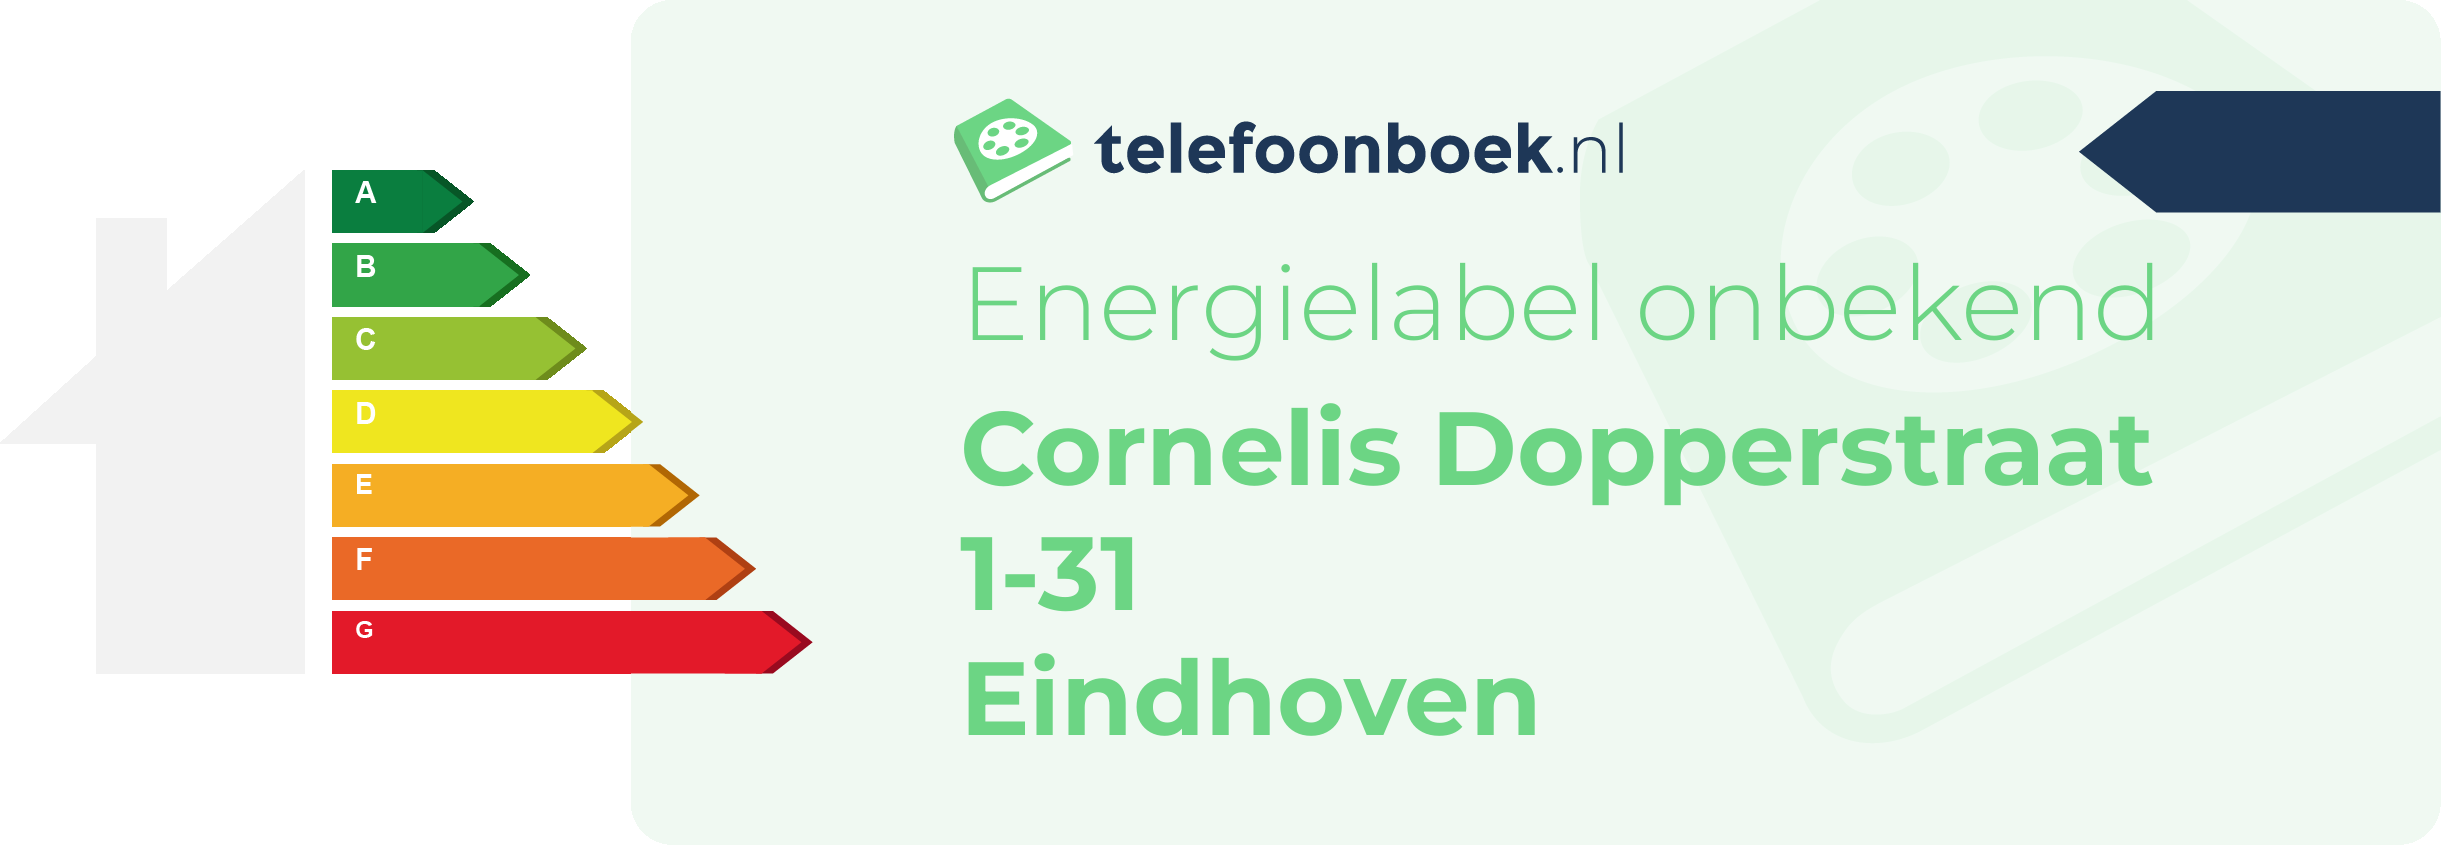 Energielabel Cornelis Dopperstraat 1-31 Eindhoven